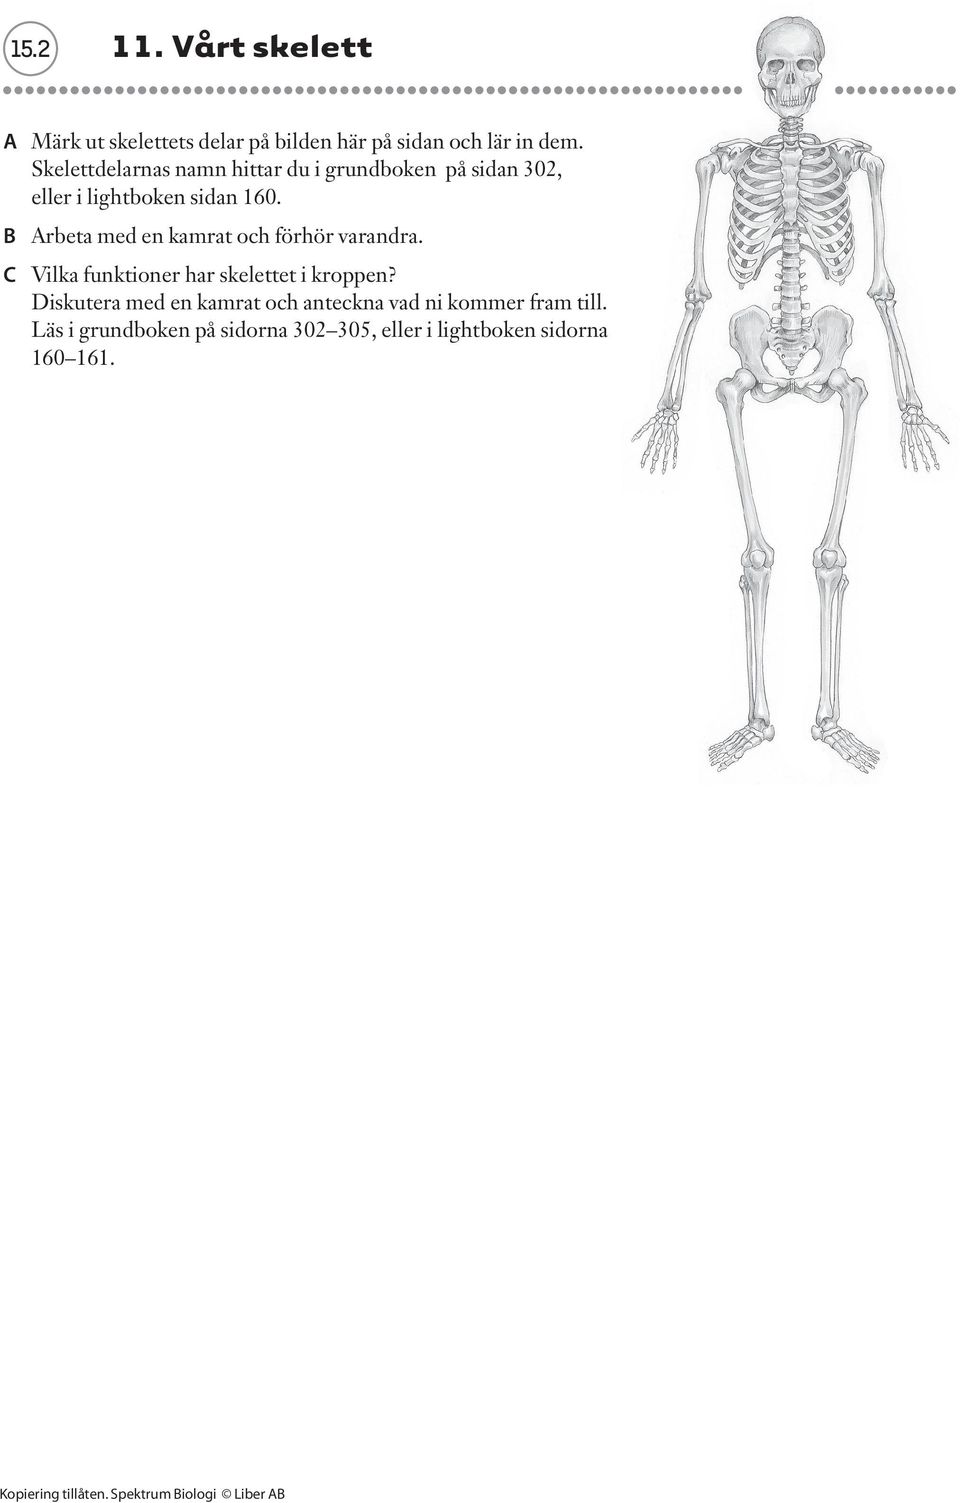 B Arbeta med en kamrat och förhör varandra. C Vilka funktioner har skelettet i kroppen?